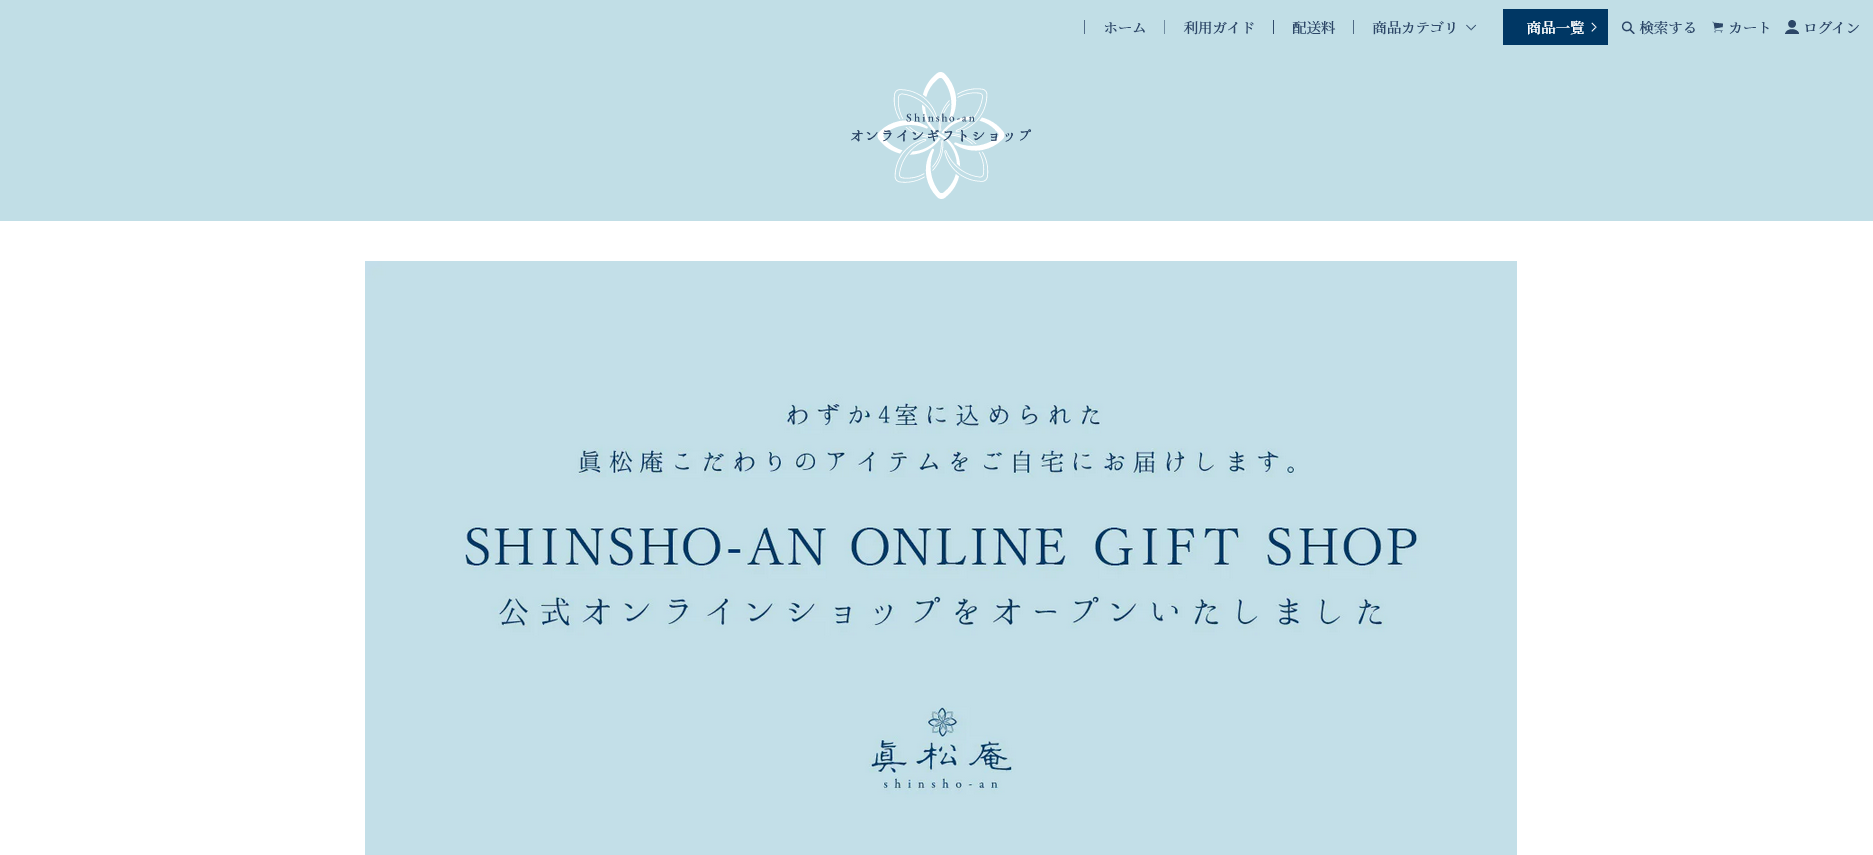 眞松庵 オンラインギフトショップがオープンいたしました。